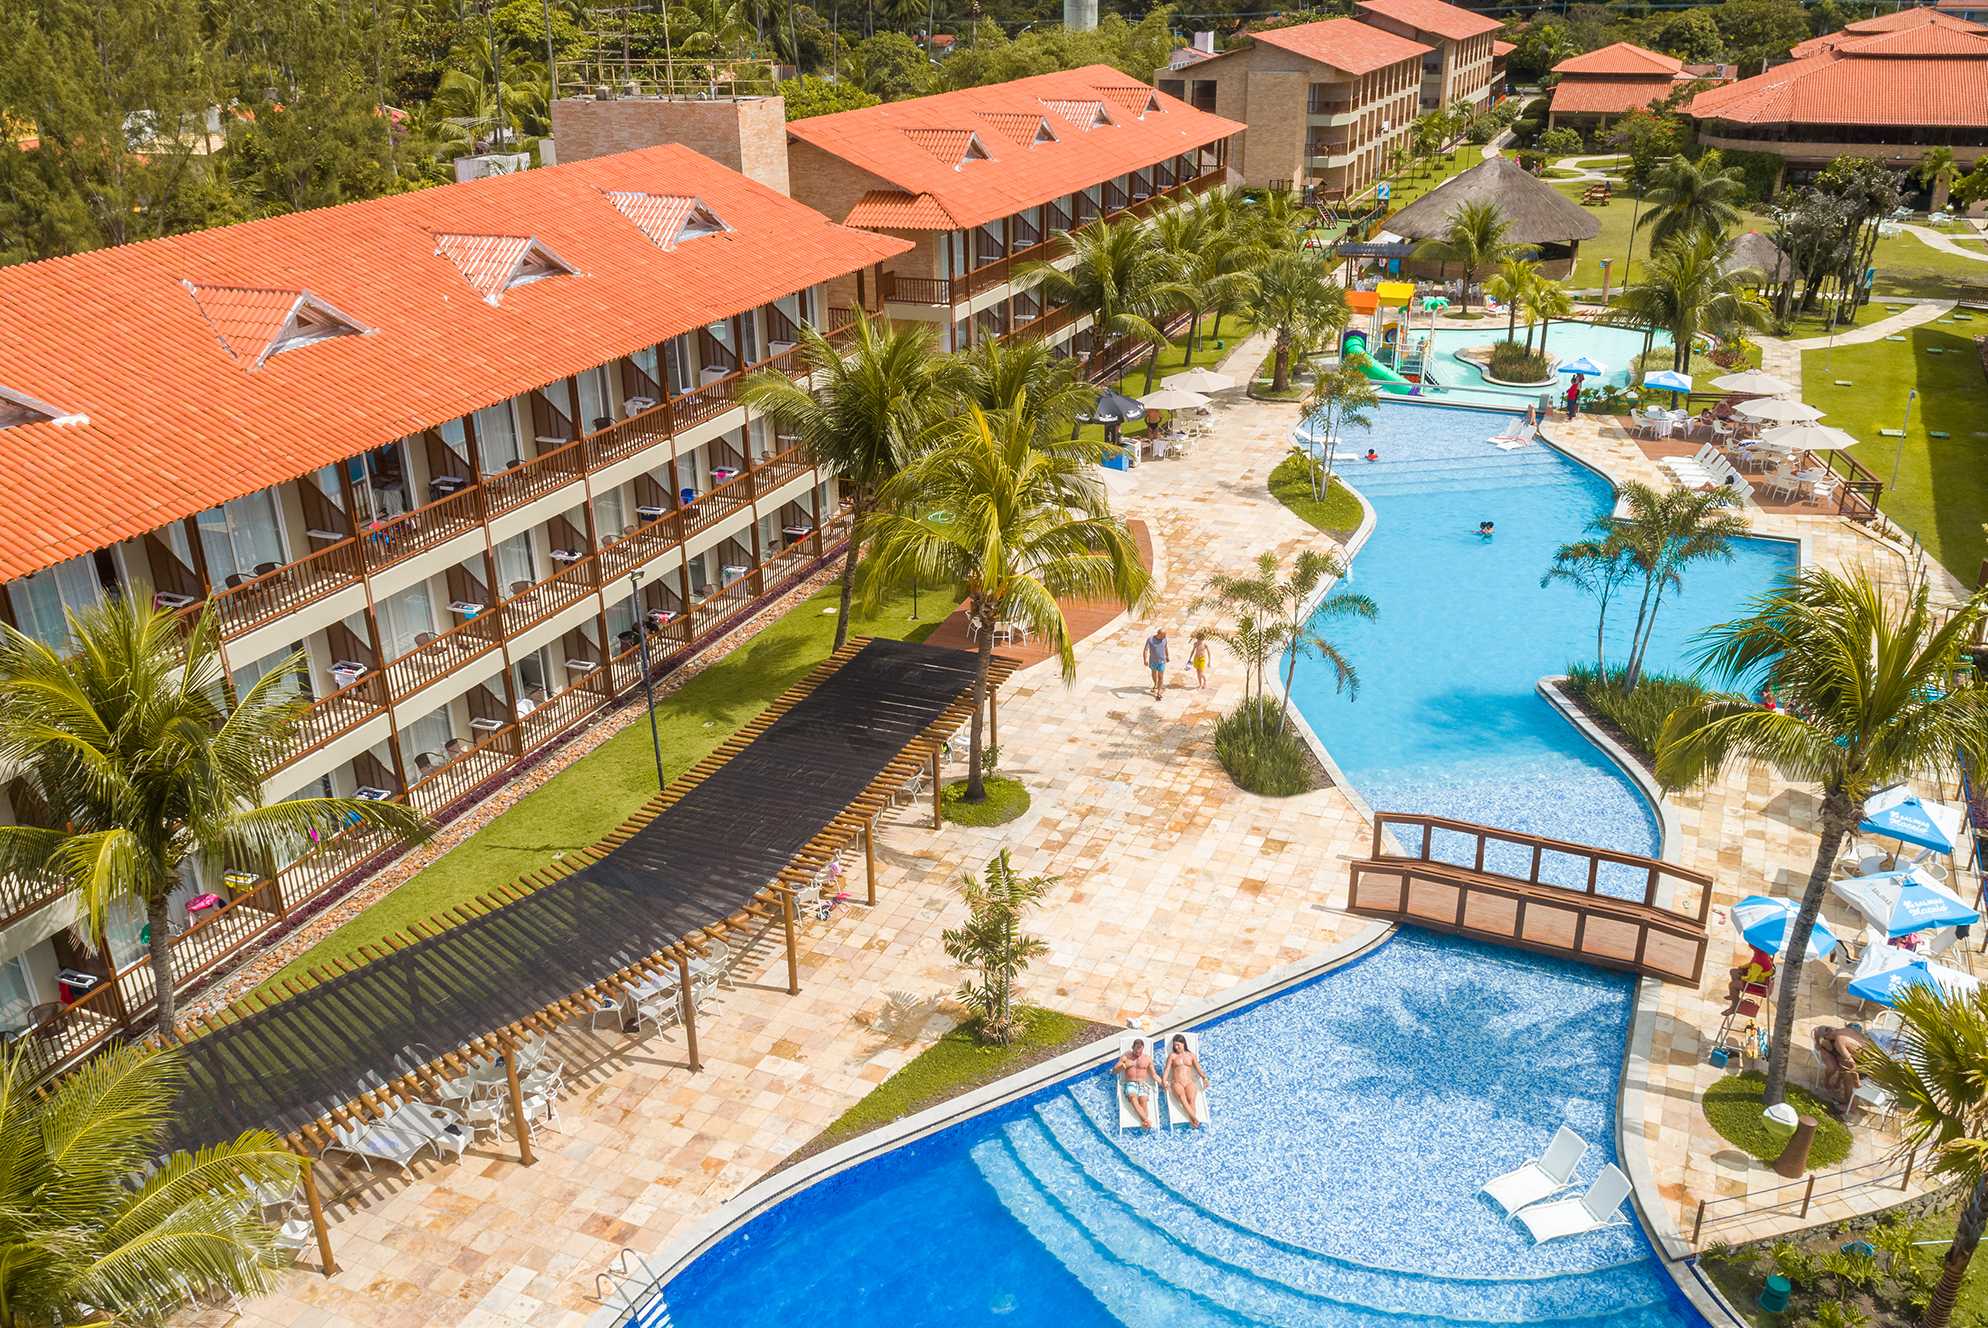 A imagem captura o Salinas Maceió, exibindo uma vista aérea das instalações do resort. Edifícios com telhados de terracota se alinham à beira da piscina, que é o ponto focal da área de lazer, rodeada por palmeiras e espreguiçadeiras.